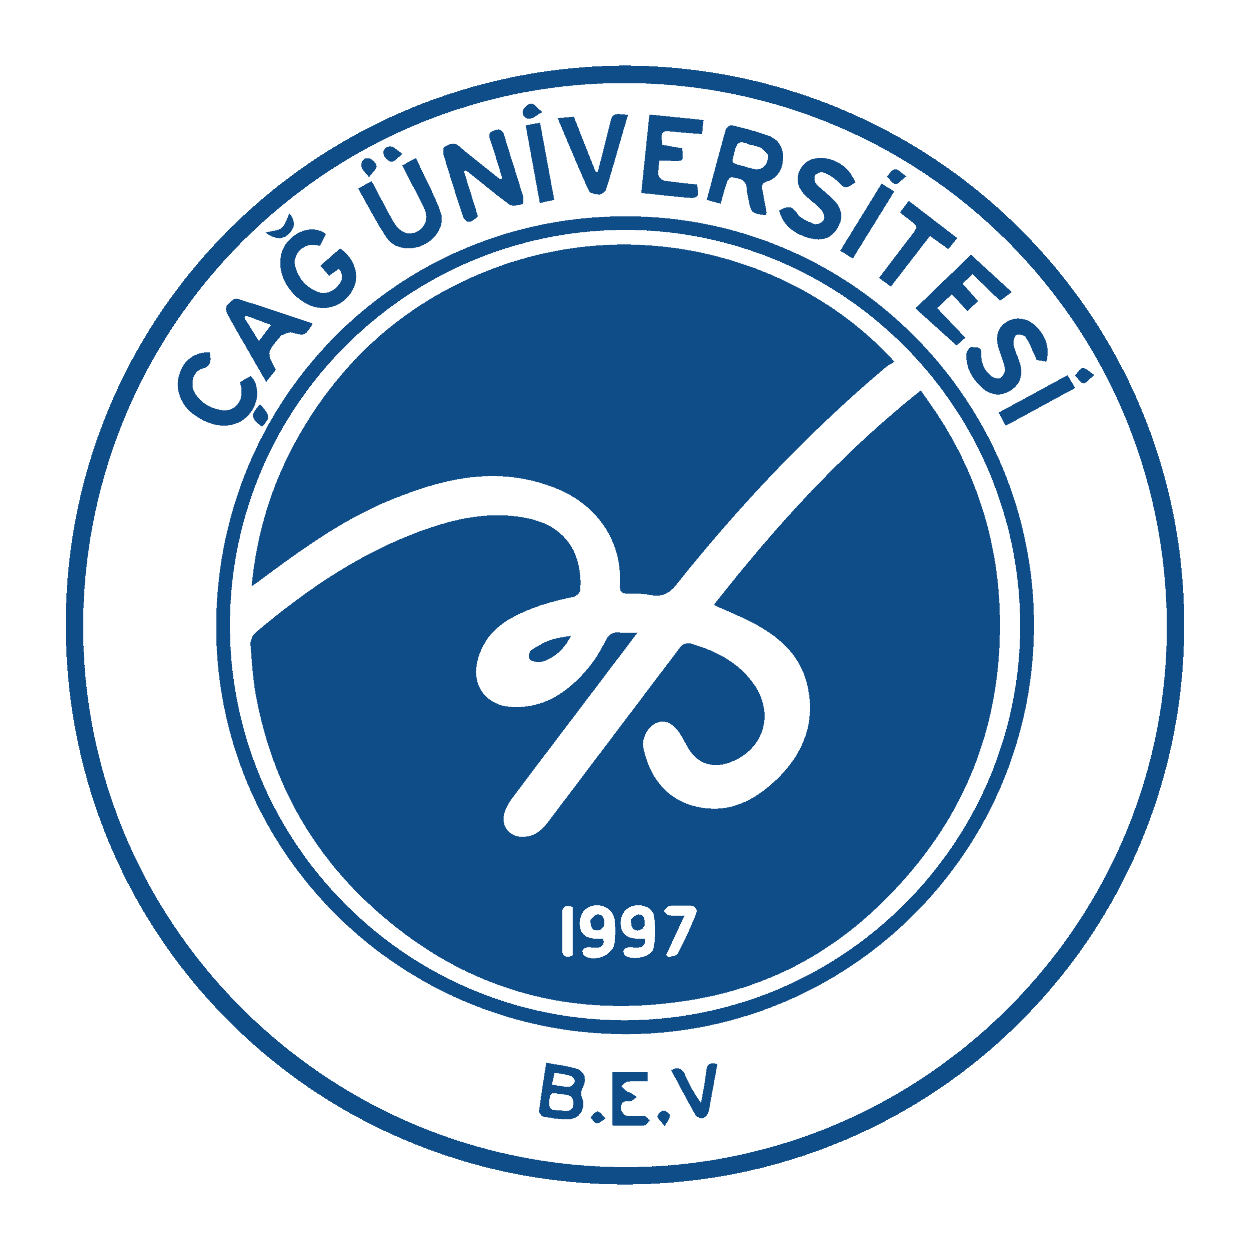 Çağ Üniversitesi Logo (Mersin) png